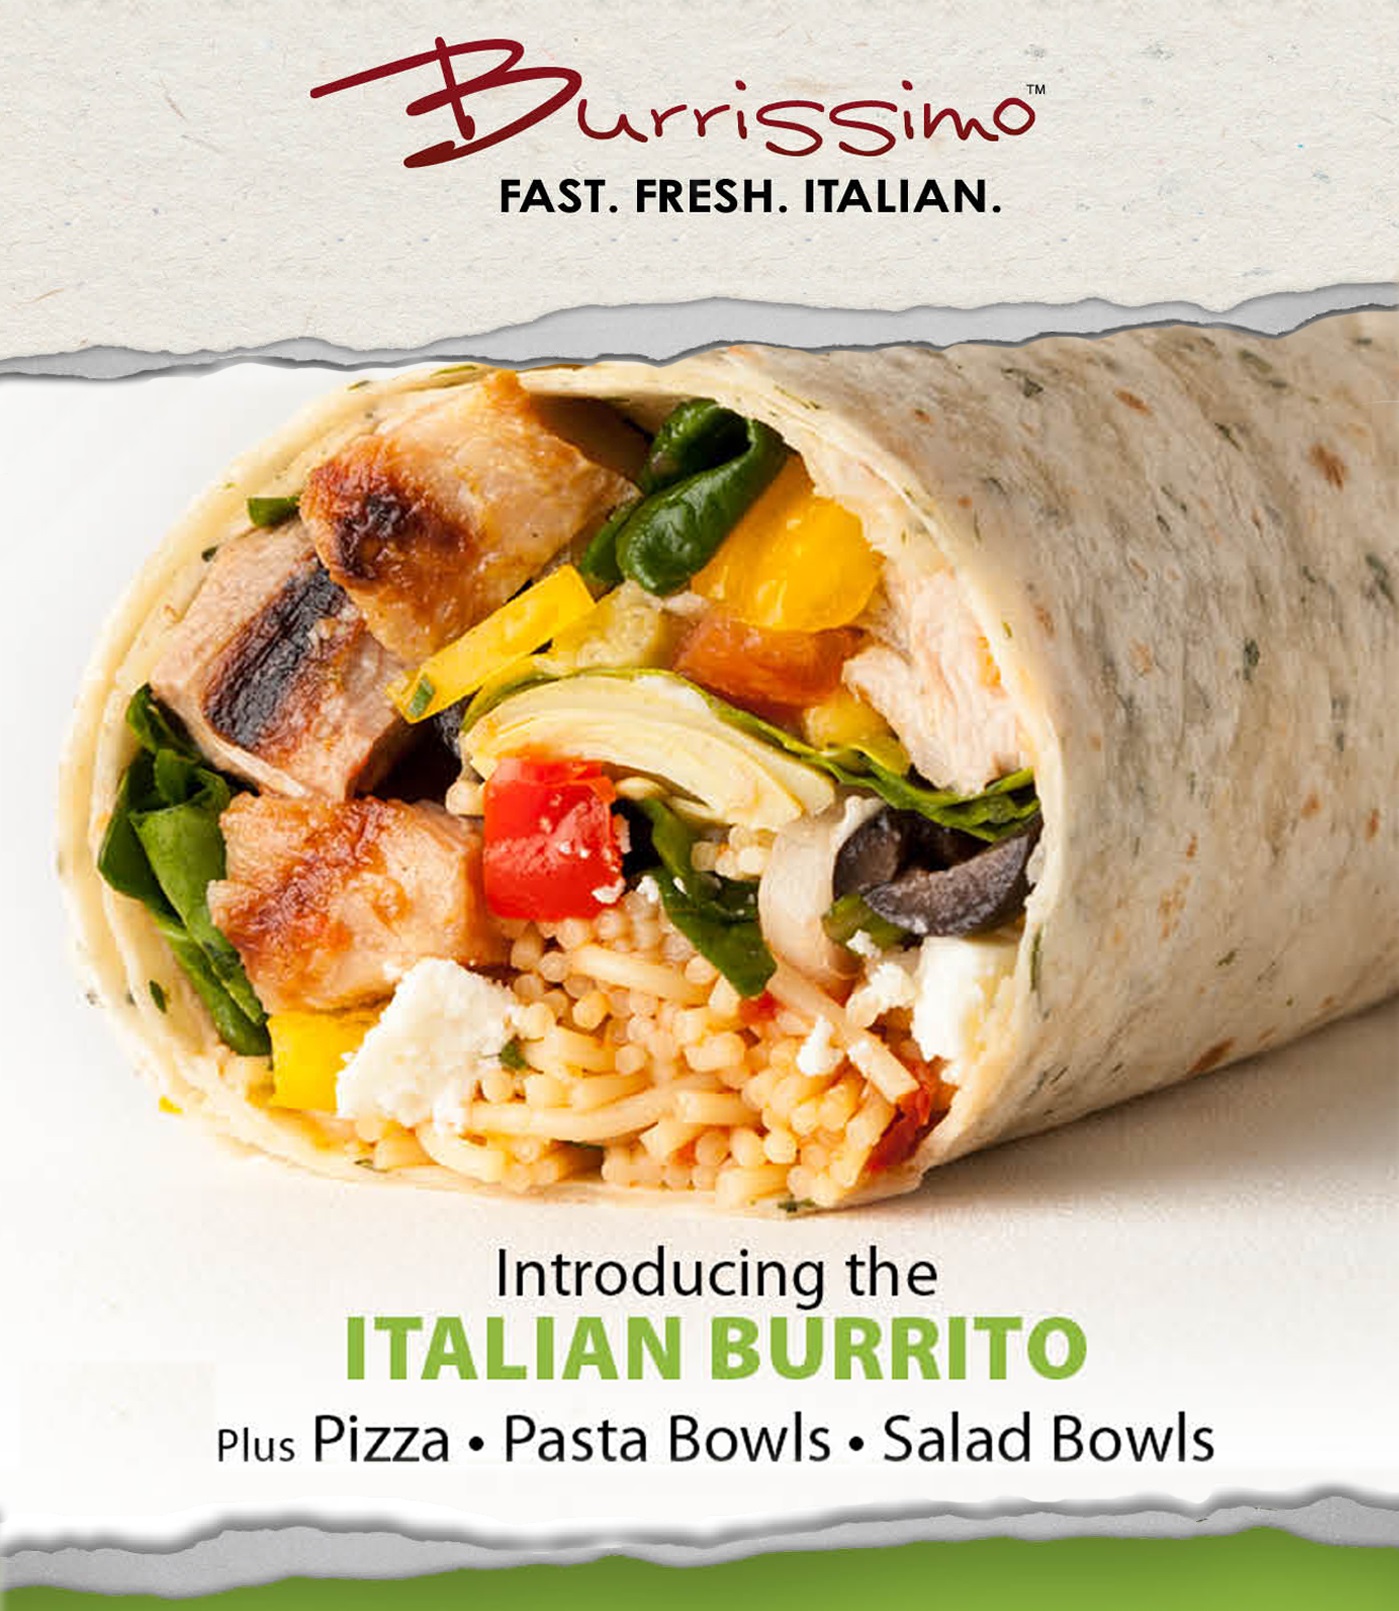 Burrissimo Introduces the Italian Burrito!